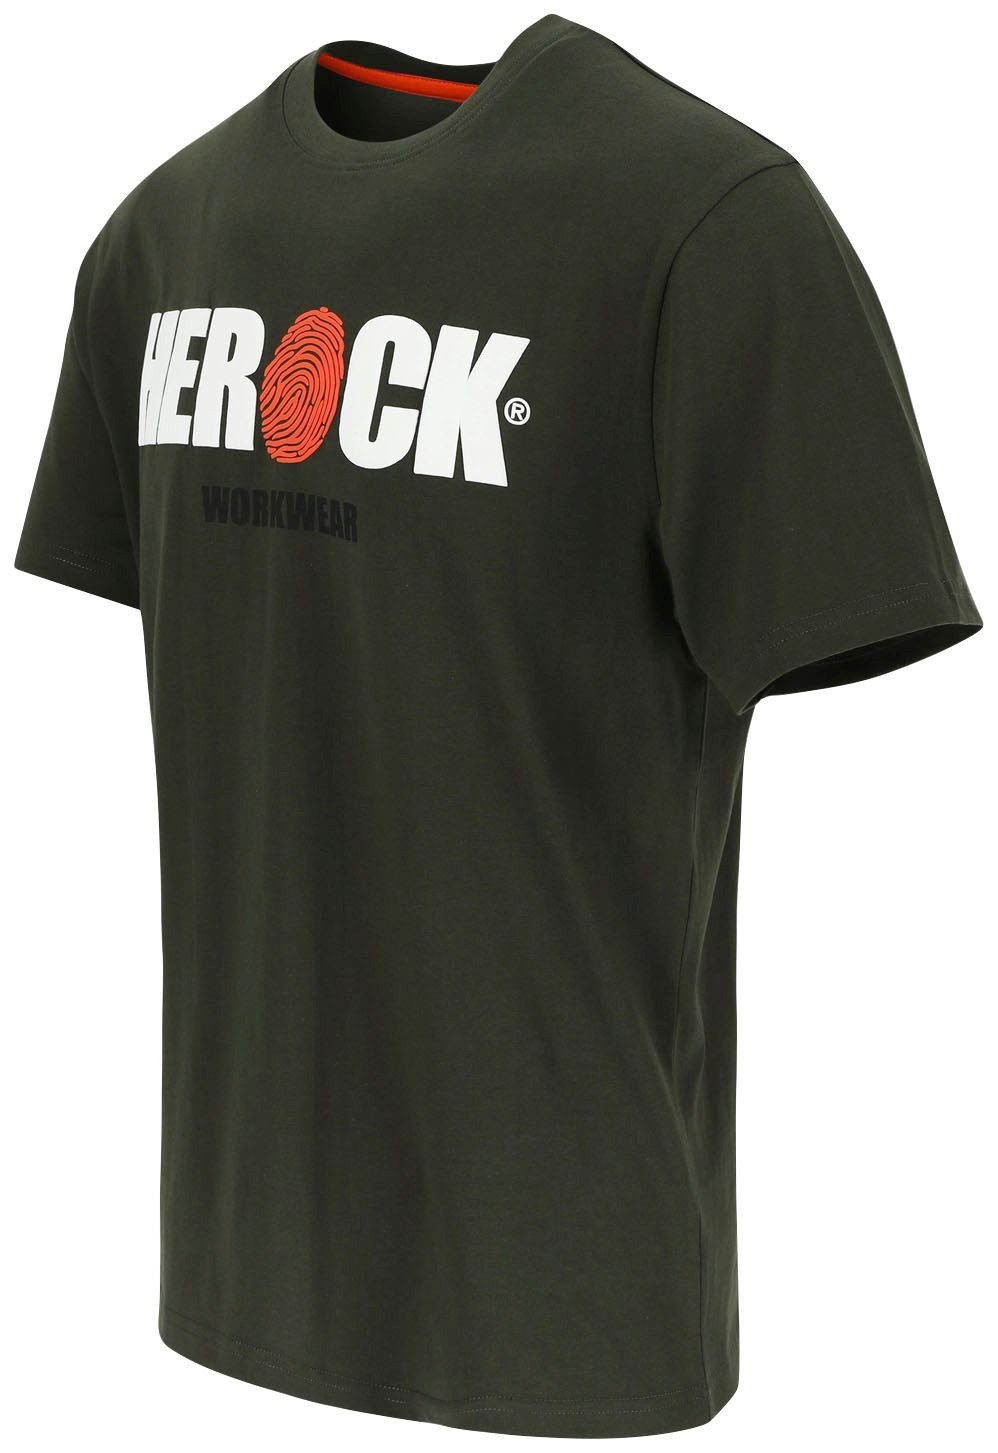 Tragegefühl T-Shirt ENI khaki mit angenehmes Rundhals, Baumwolle, Herock Herock®-Aufdruck,